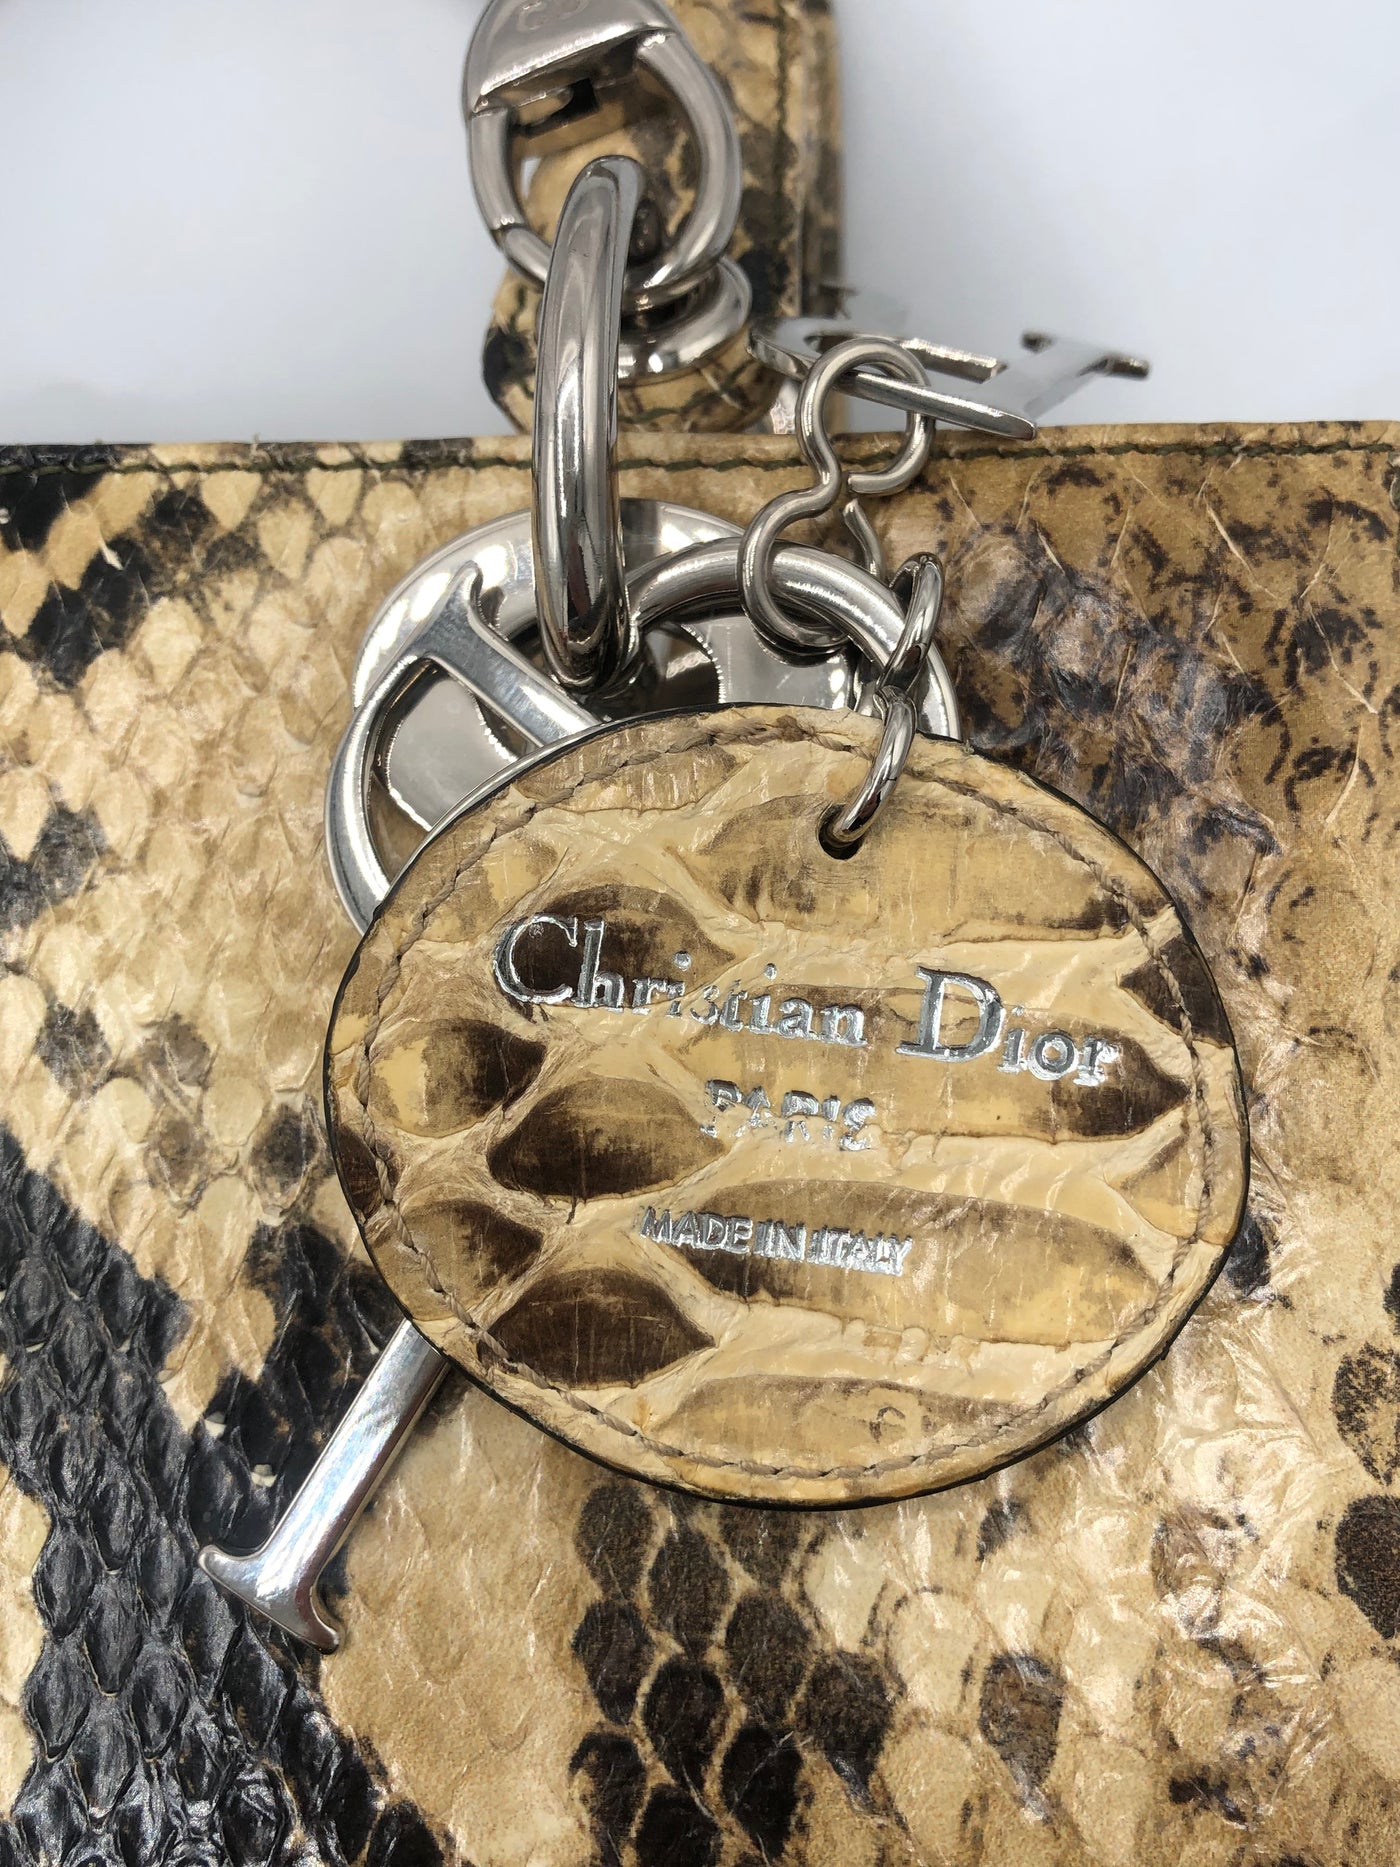 DIOR Lady Dior Medium exotic skin ( snakeskin natural ) handbag with long strap